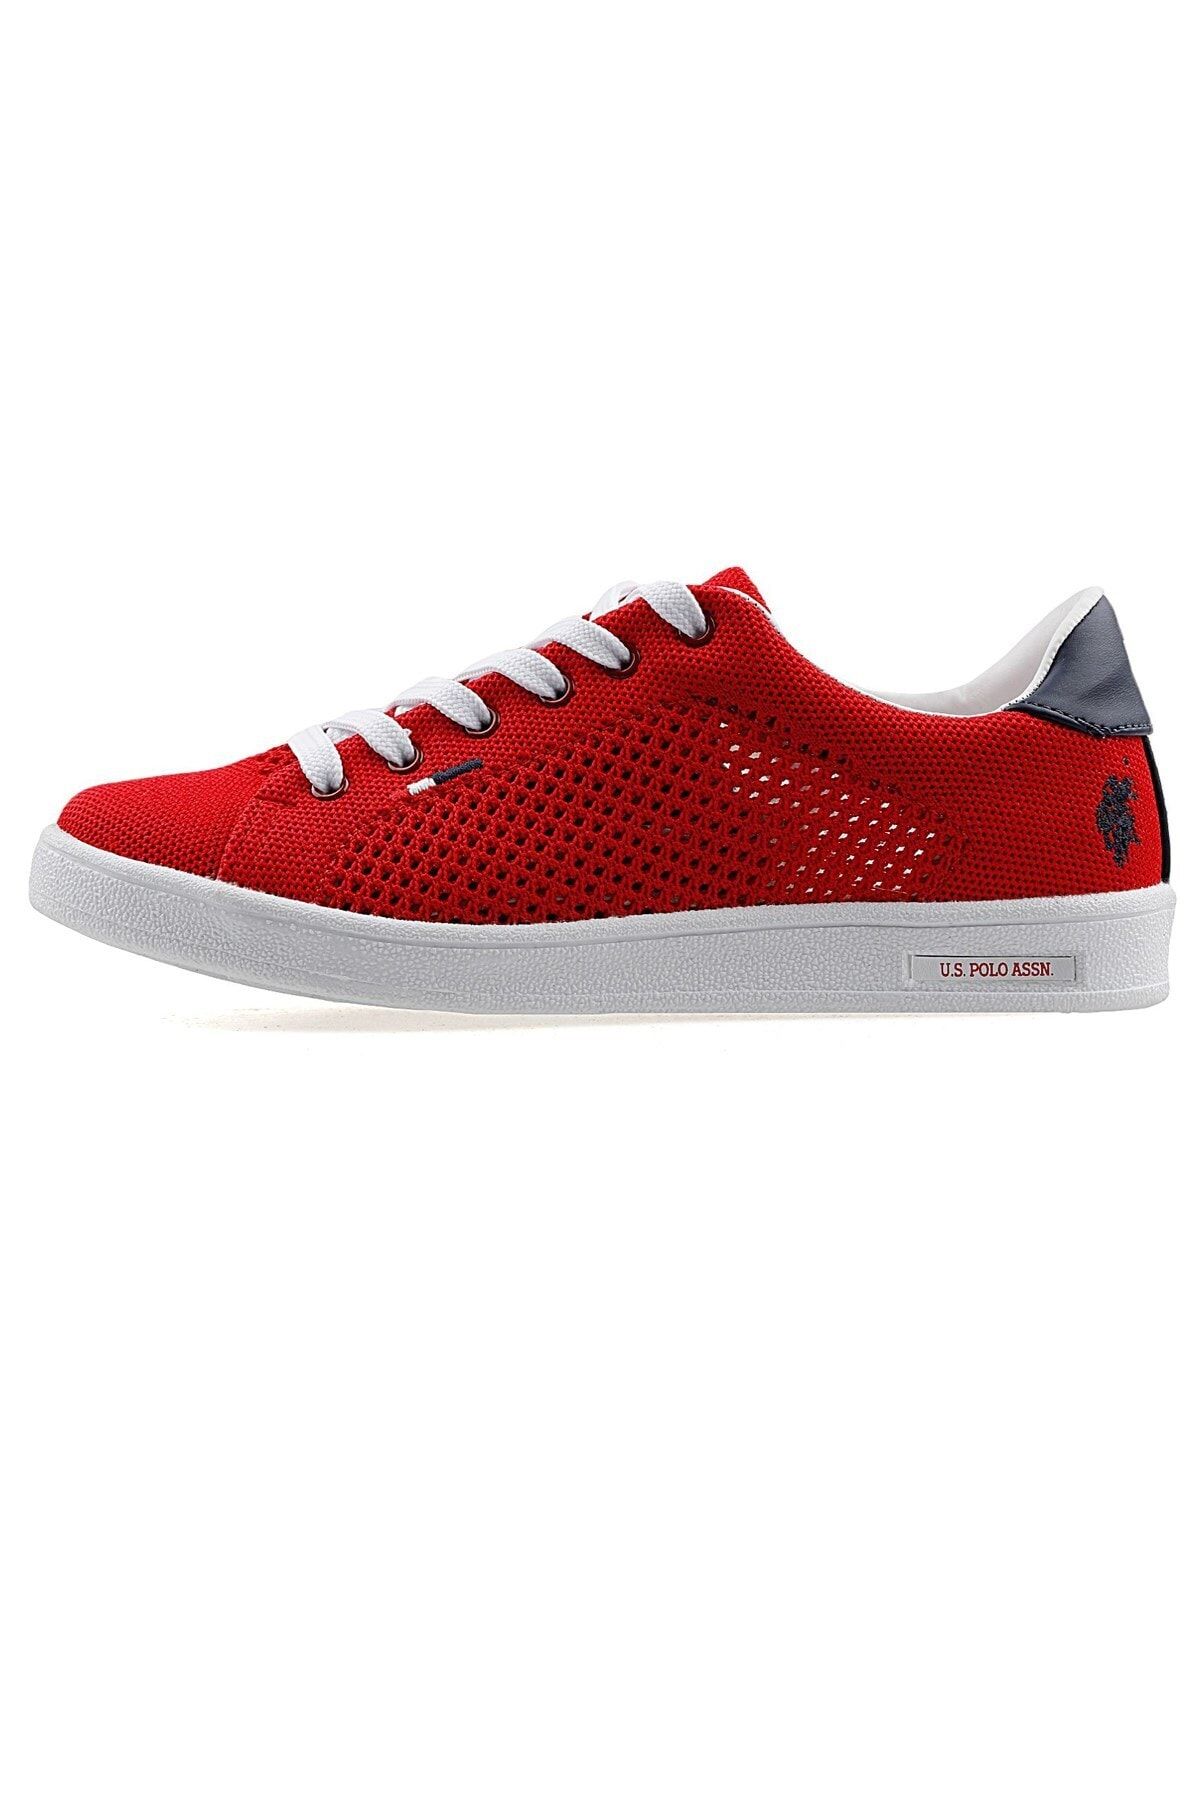 U.S. Polo Assn. FRANCO KNITTING Kırmızı Kadın Sneaker Ayakkabı 100311378